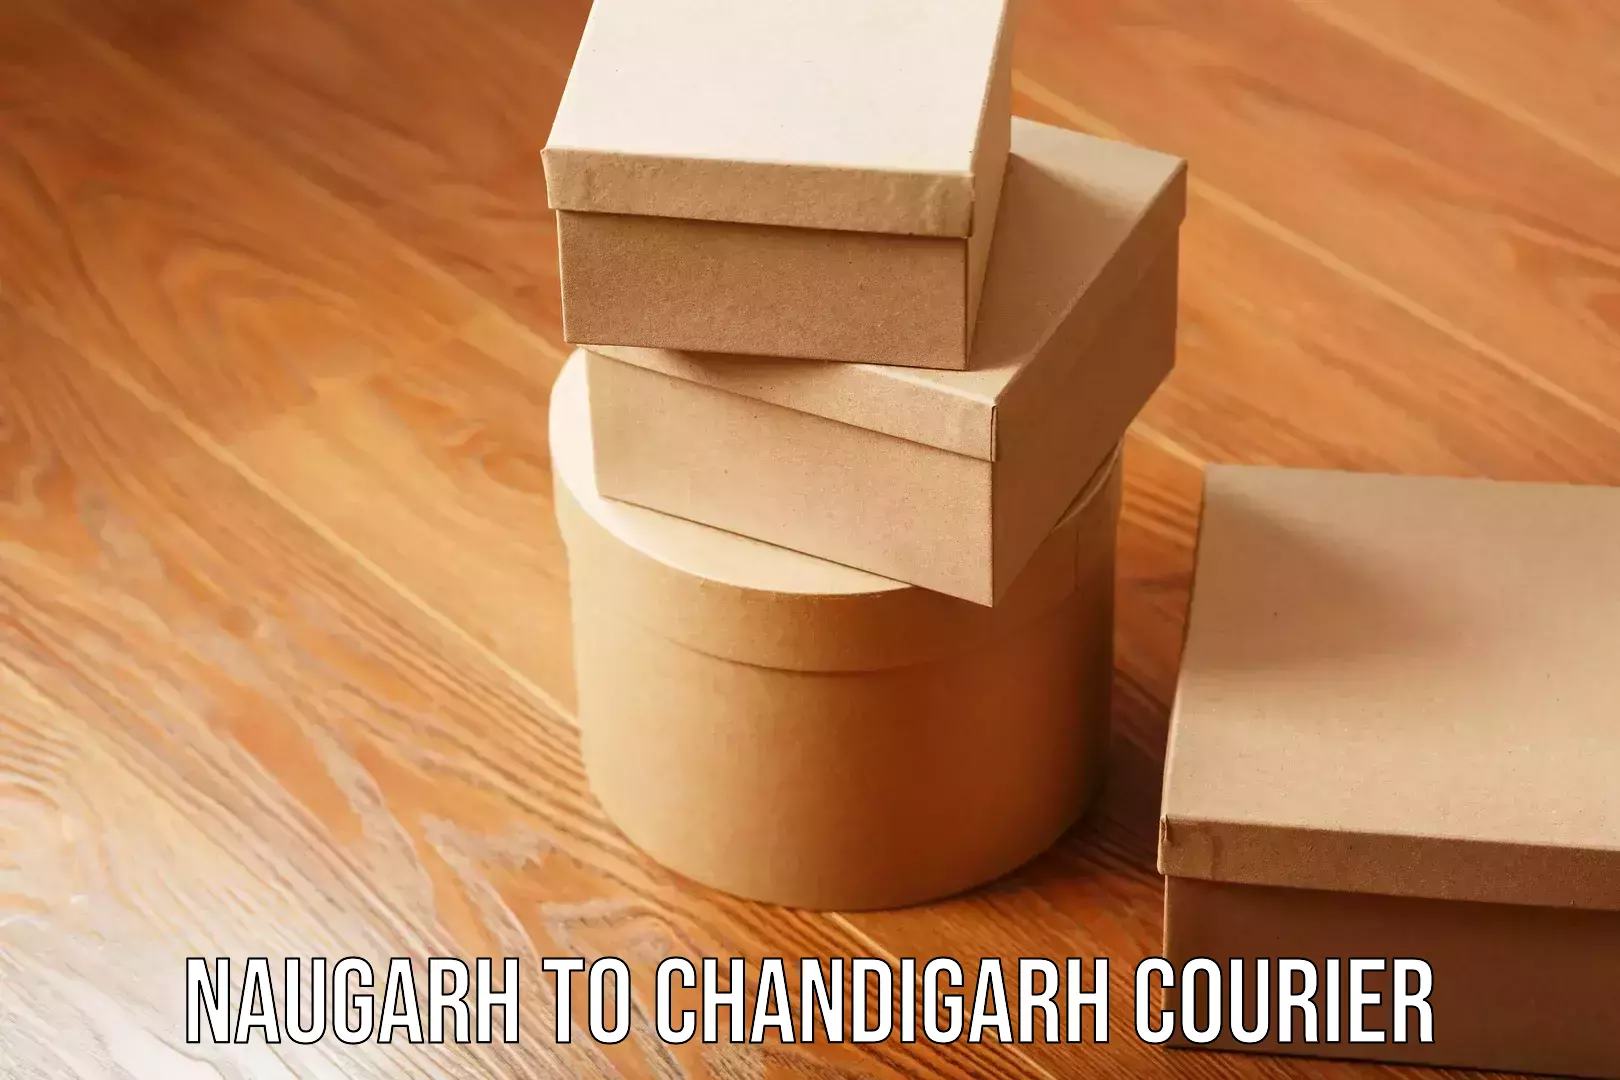 Premium moving services Naugarh to Chandigarh